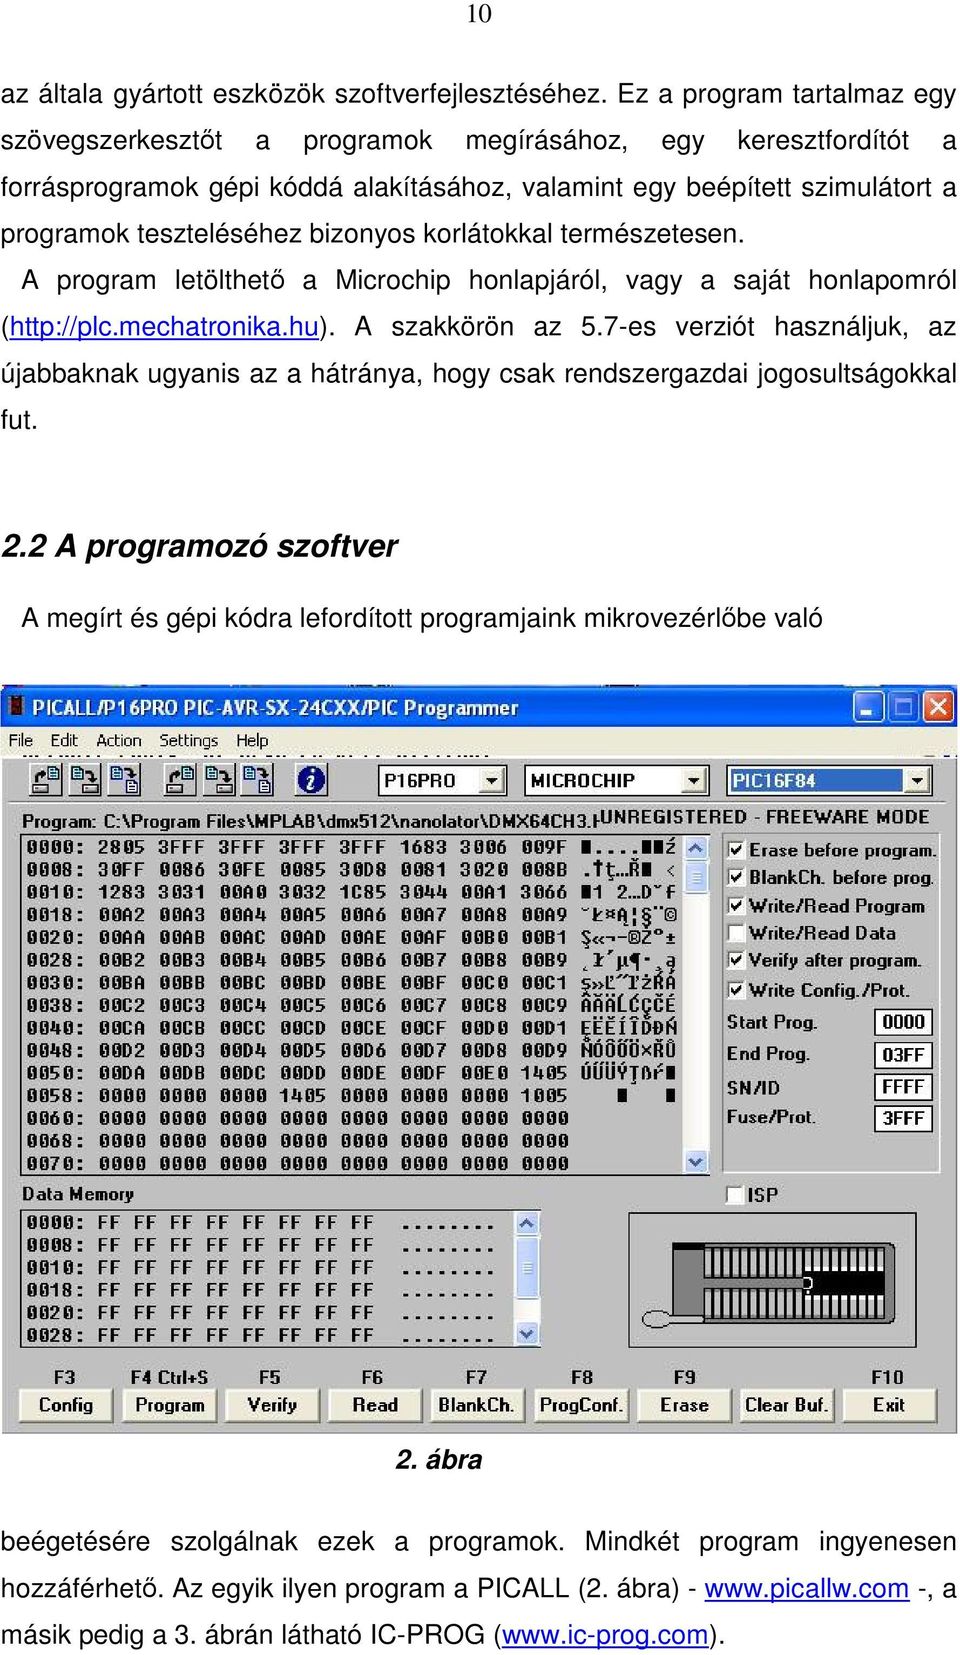 bizonyos korlátokkal természetesen. A program letölthetı a Microchip honlapjáról, vagy a saját honlapomról (http://plc.mechatronika.hu). A szakkörön az 5.